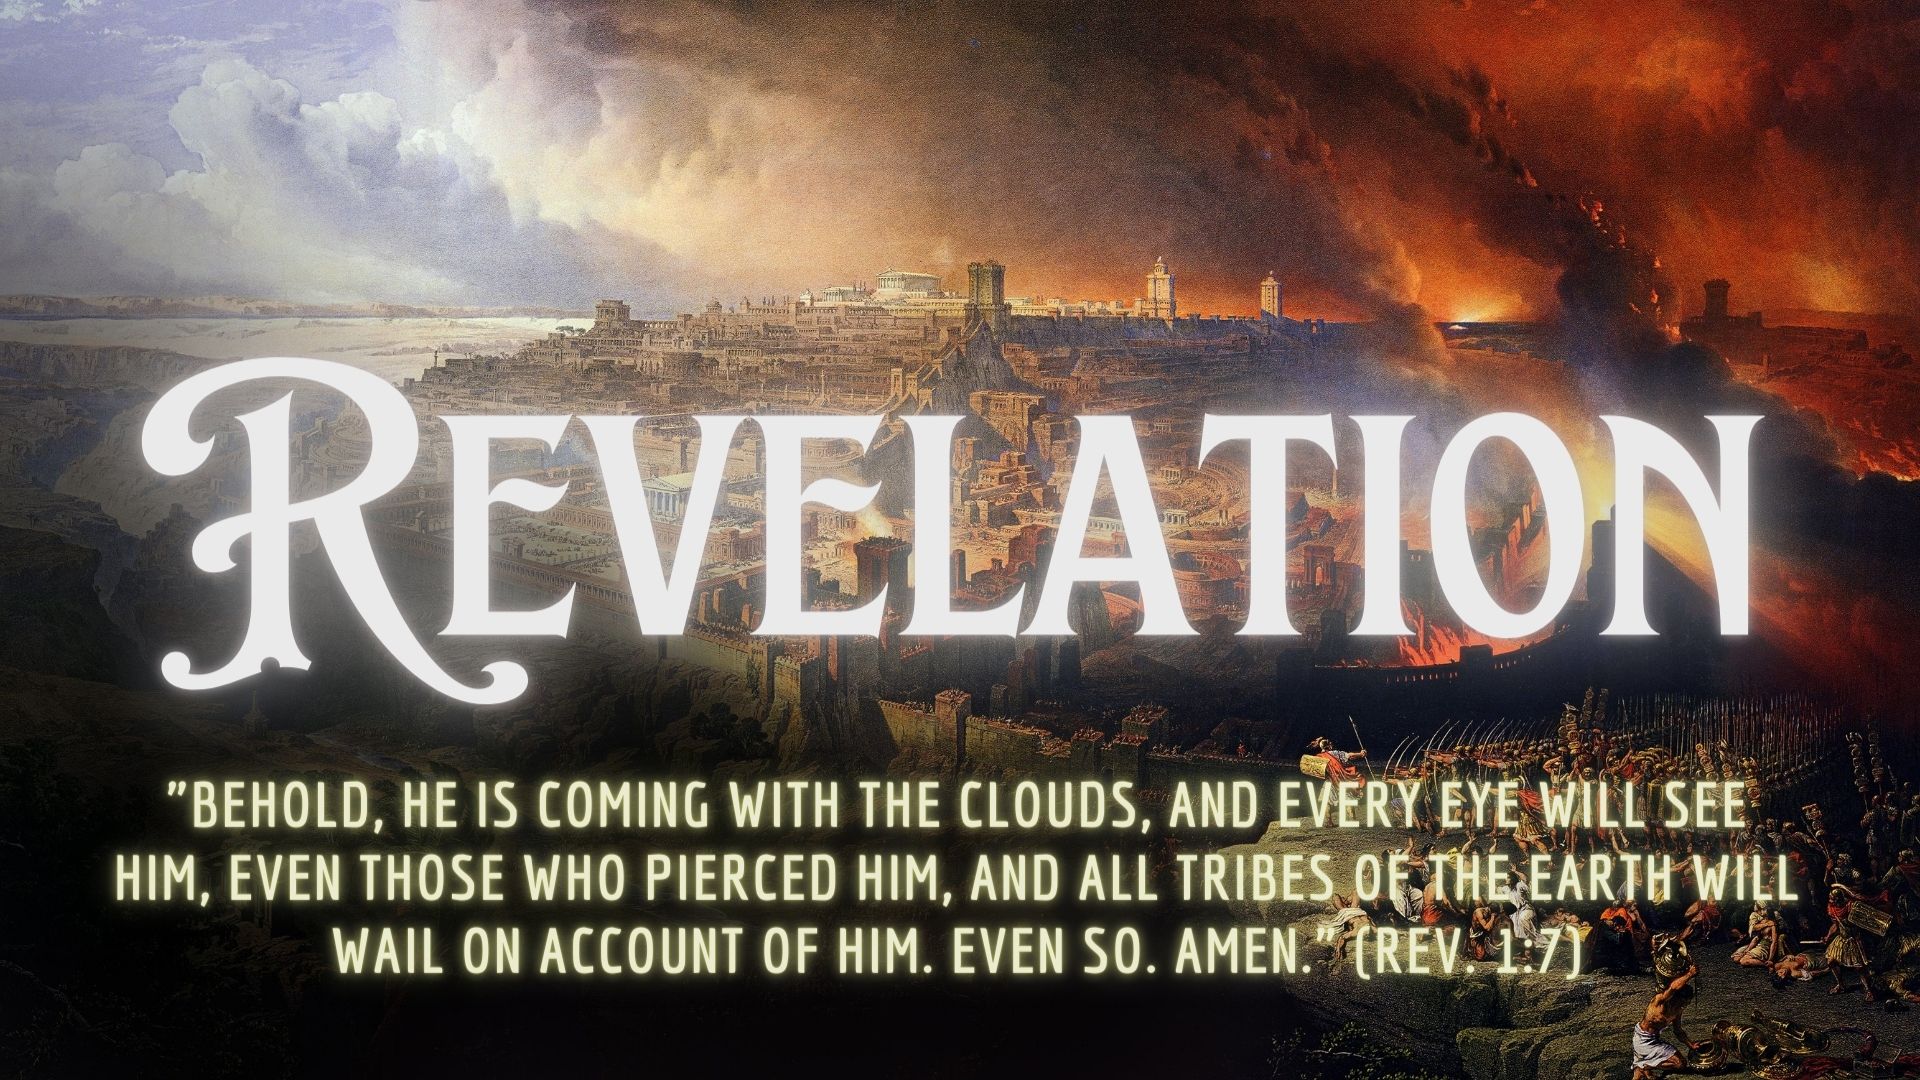 Revelation 17:7-18 (The Scarlet Beast)